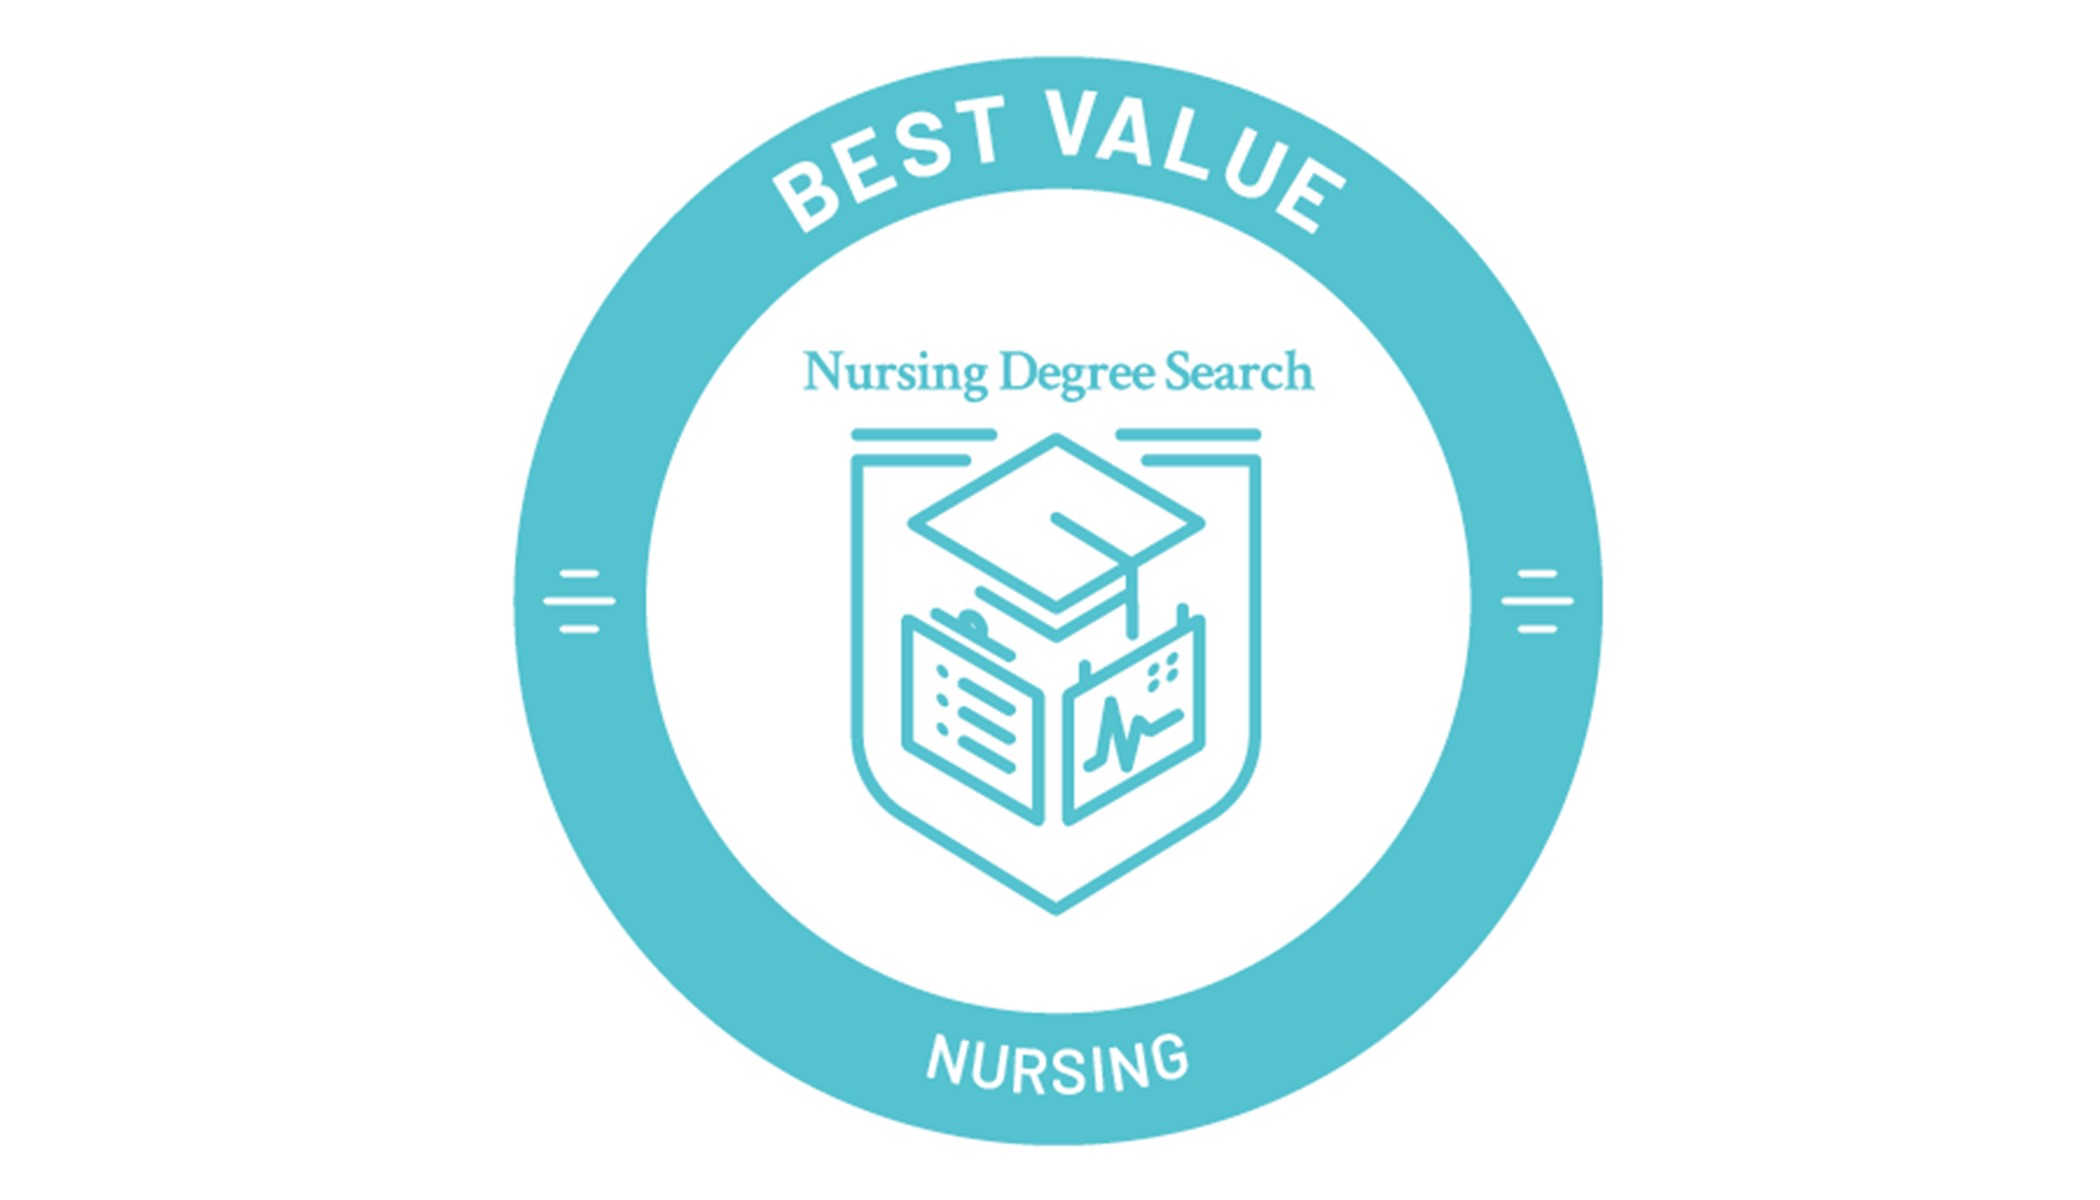 School of Nursing Ranked Among Top 10 Best Value Nursing